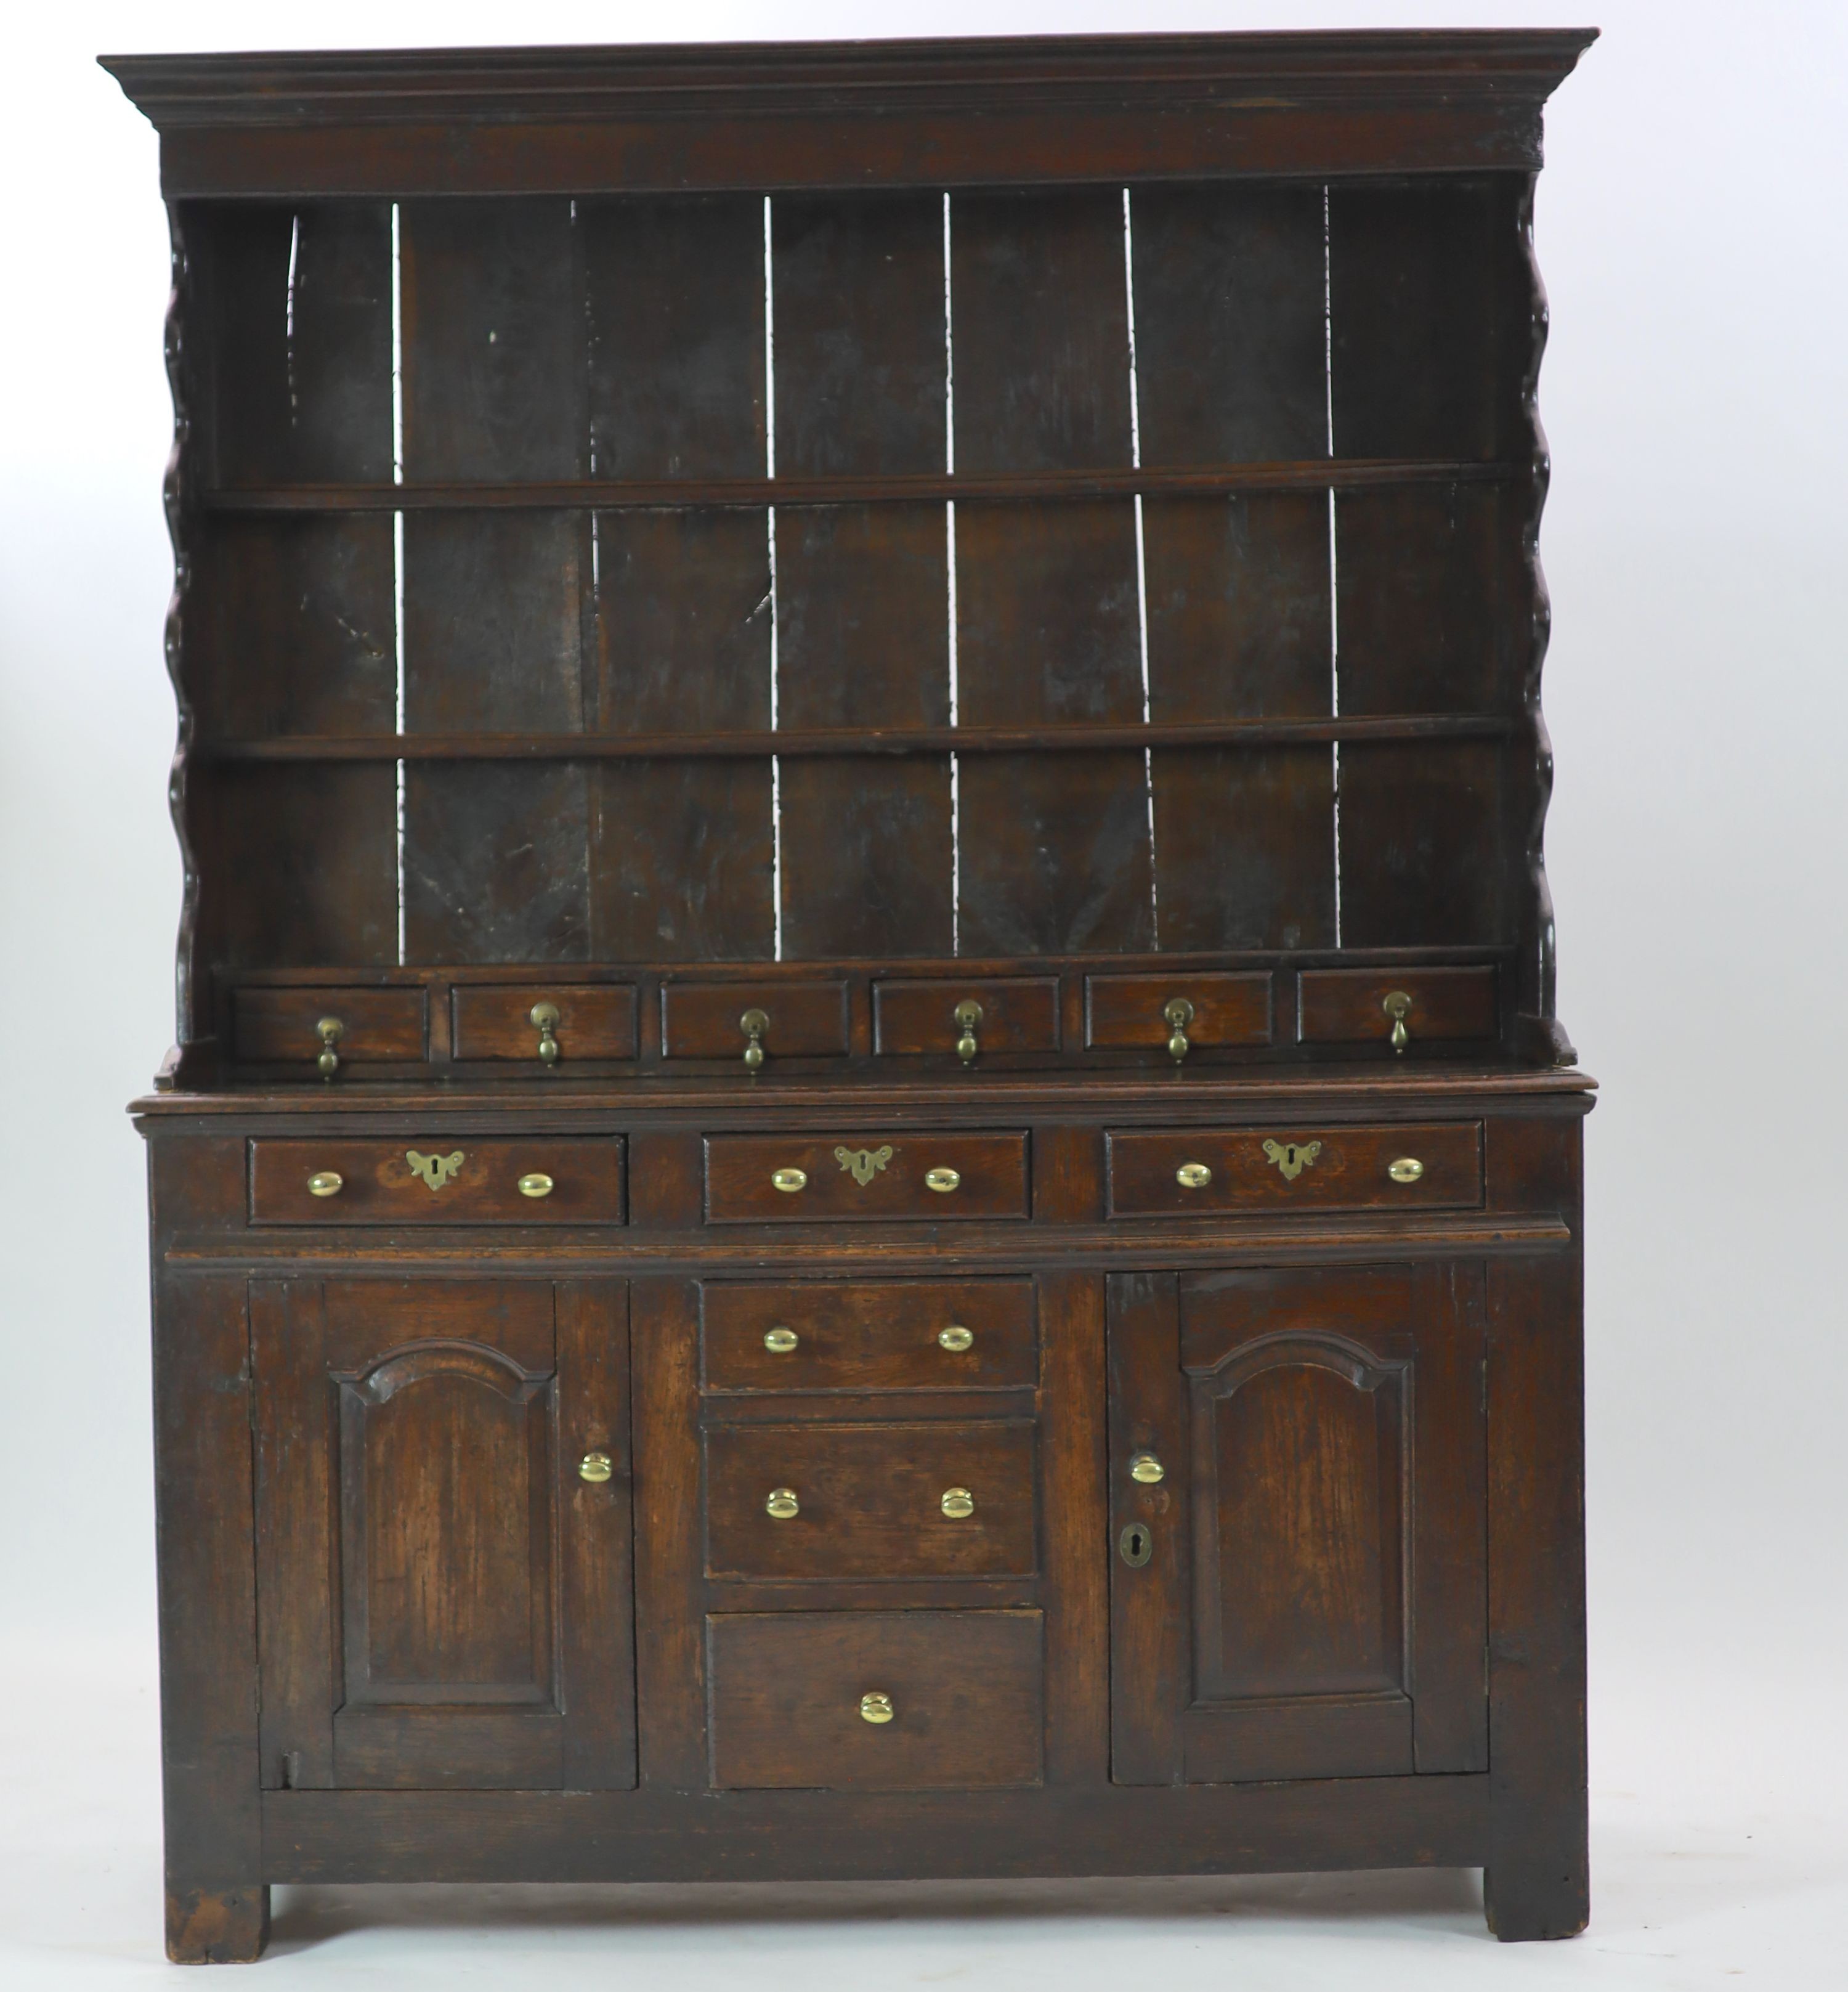 An 18th century oak dresser